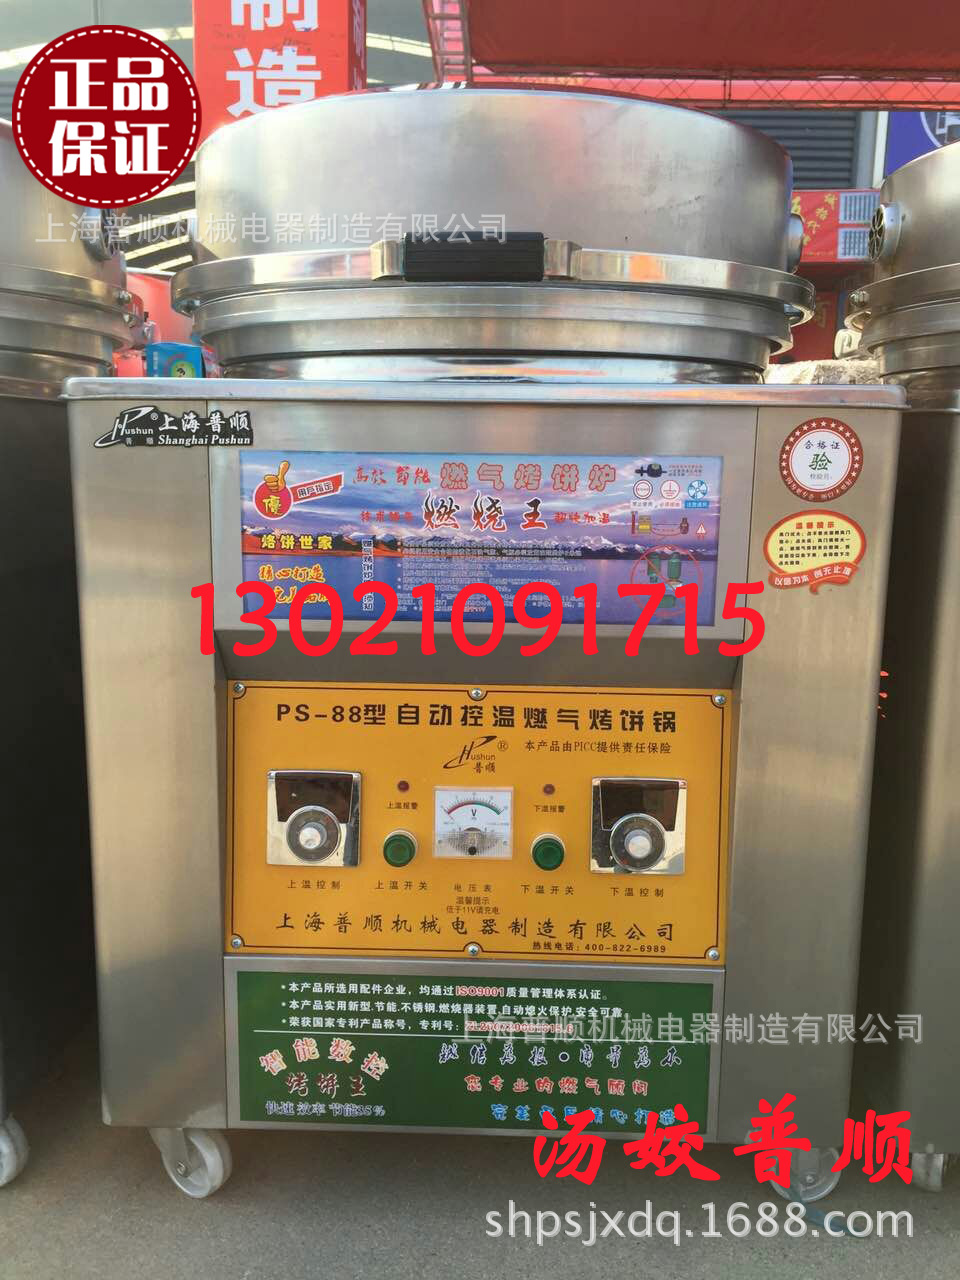 上海普顺燃气电饼铛/煤气烤饼机/燃气烤饼炉燃气大饼机商用做饼机